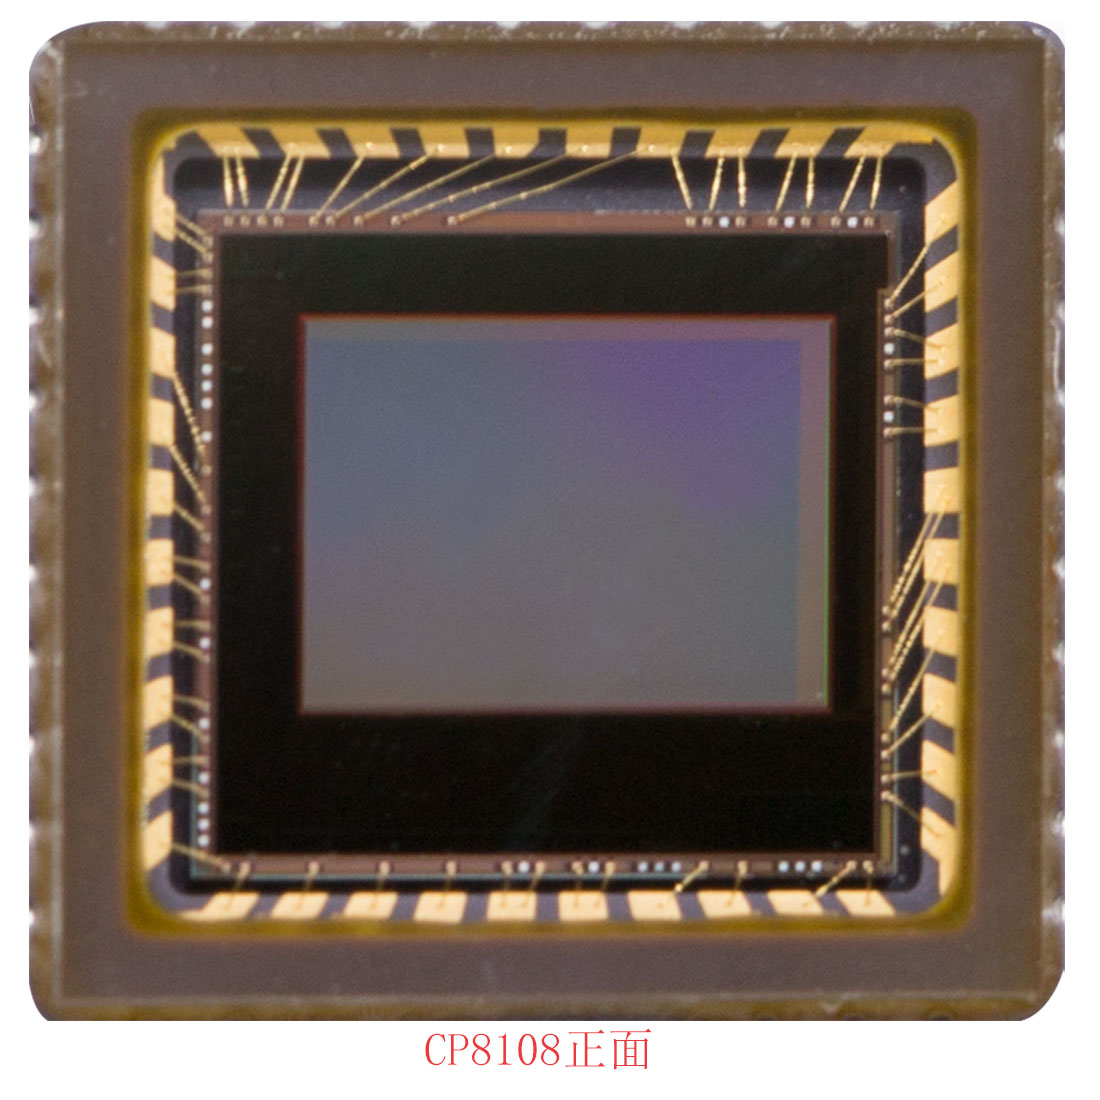 宽动态摄像头模组，CP8108,120db动态范围摄像头，800tvl，1/3-inch analog camera CMOS sensor，CLAIRPIXEL cmos，韩国产CMOS，可视门铃模组，大像素单元SENSOR